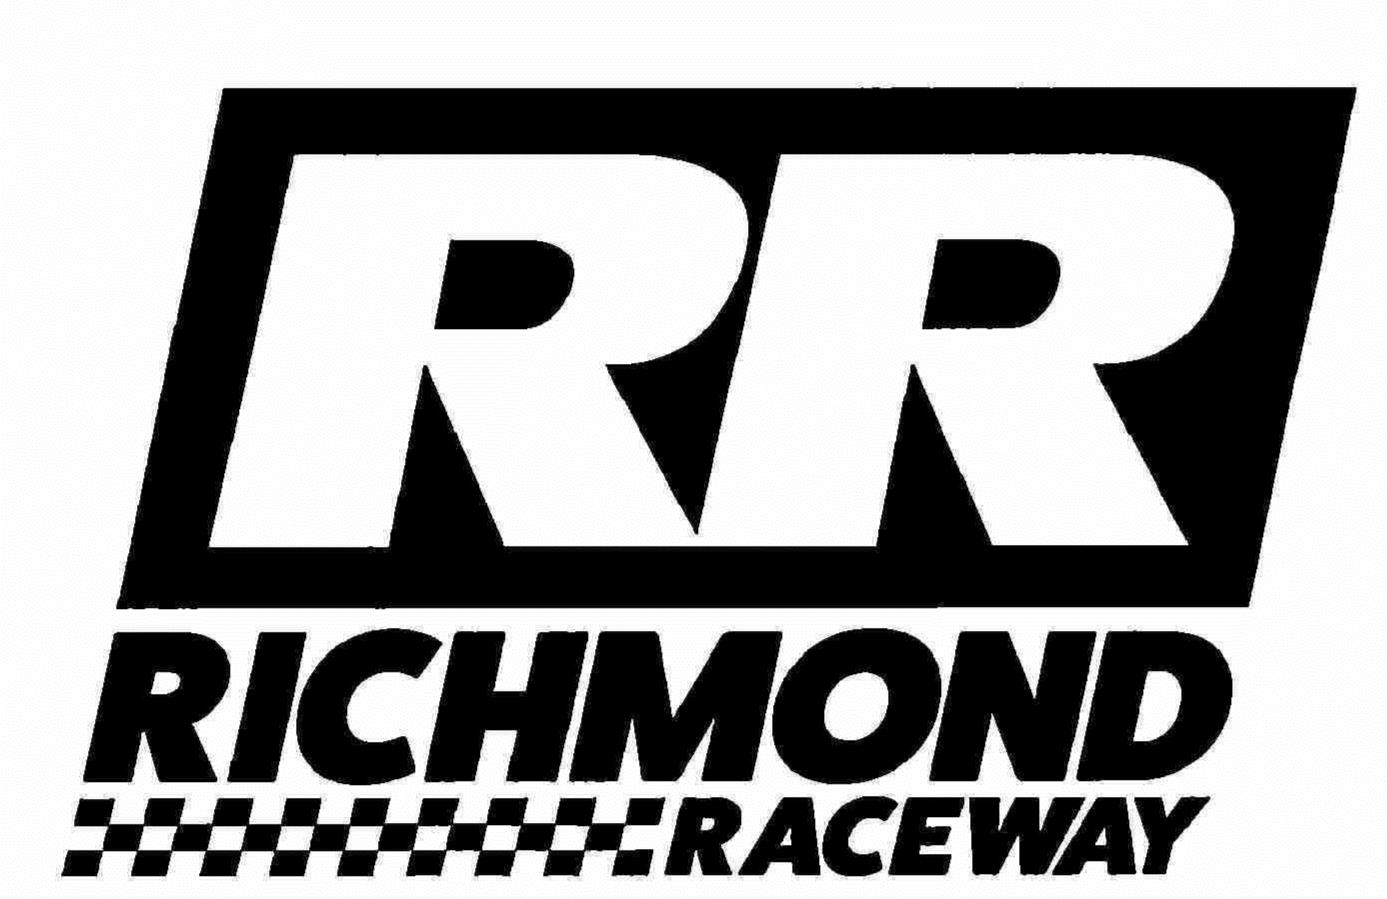 RR RICHMOND RACEWAY